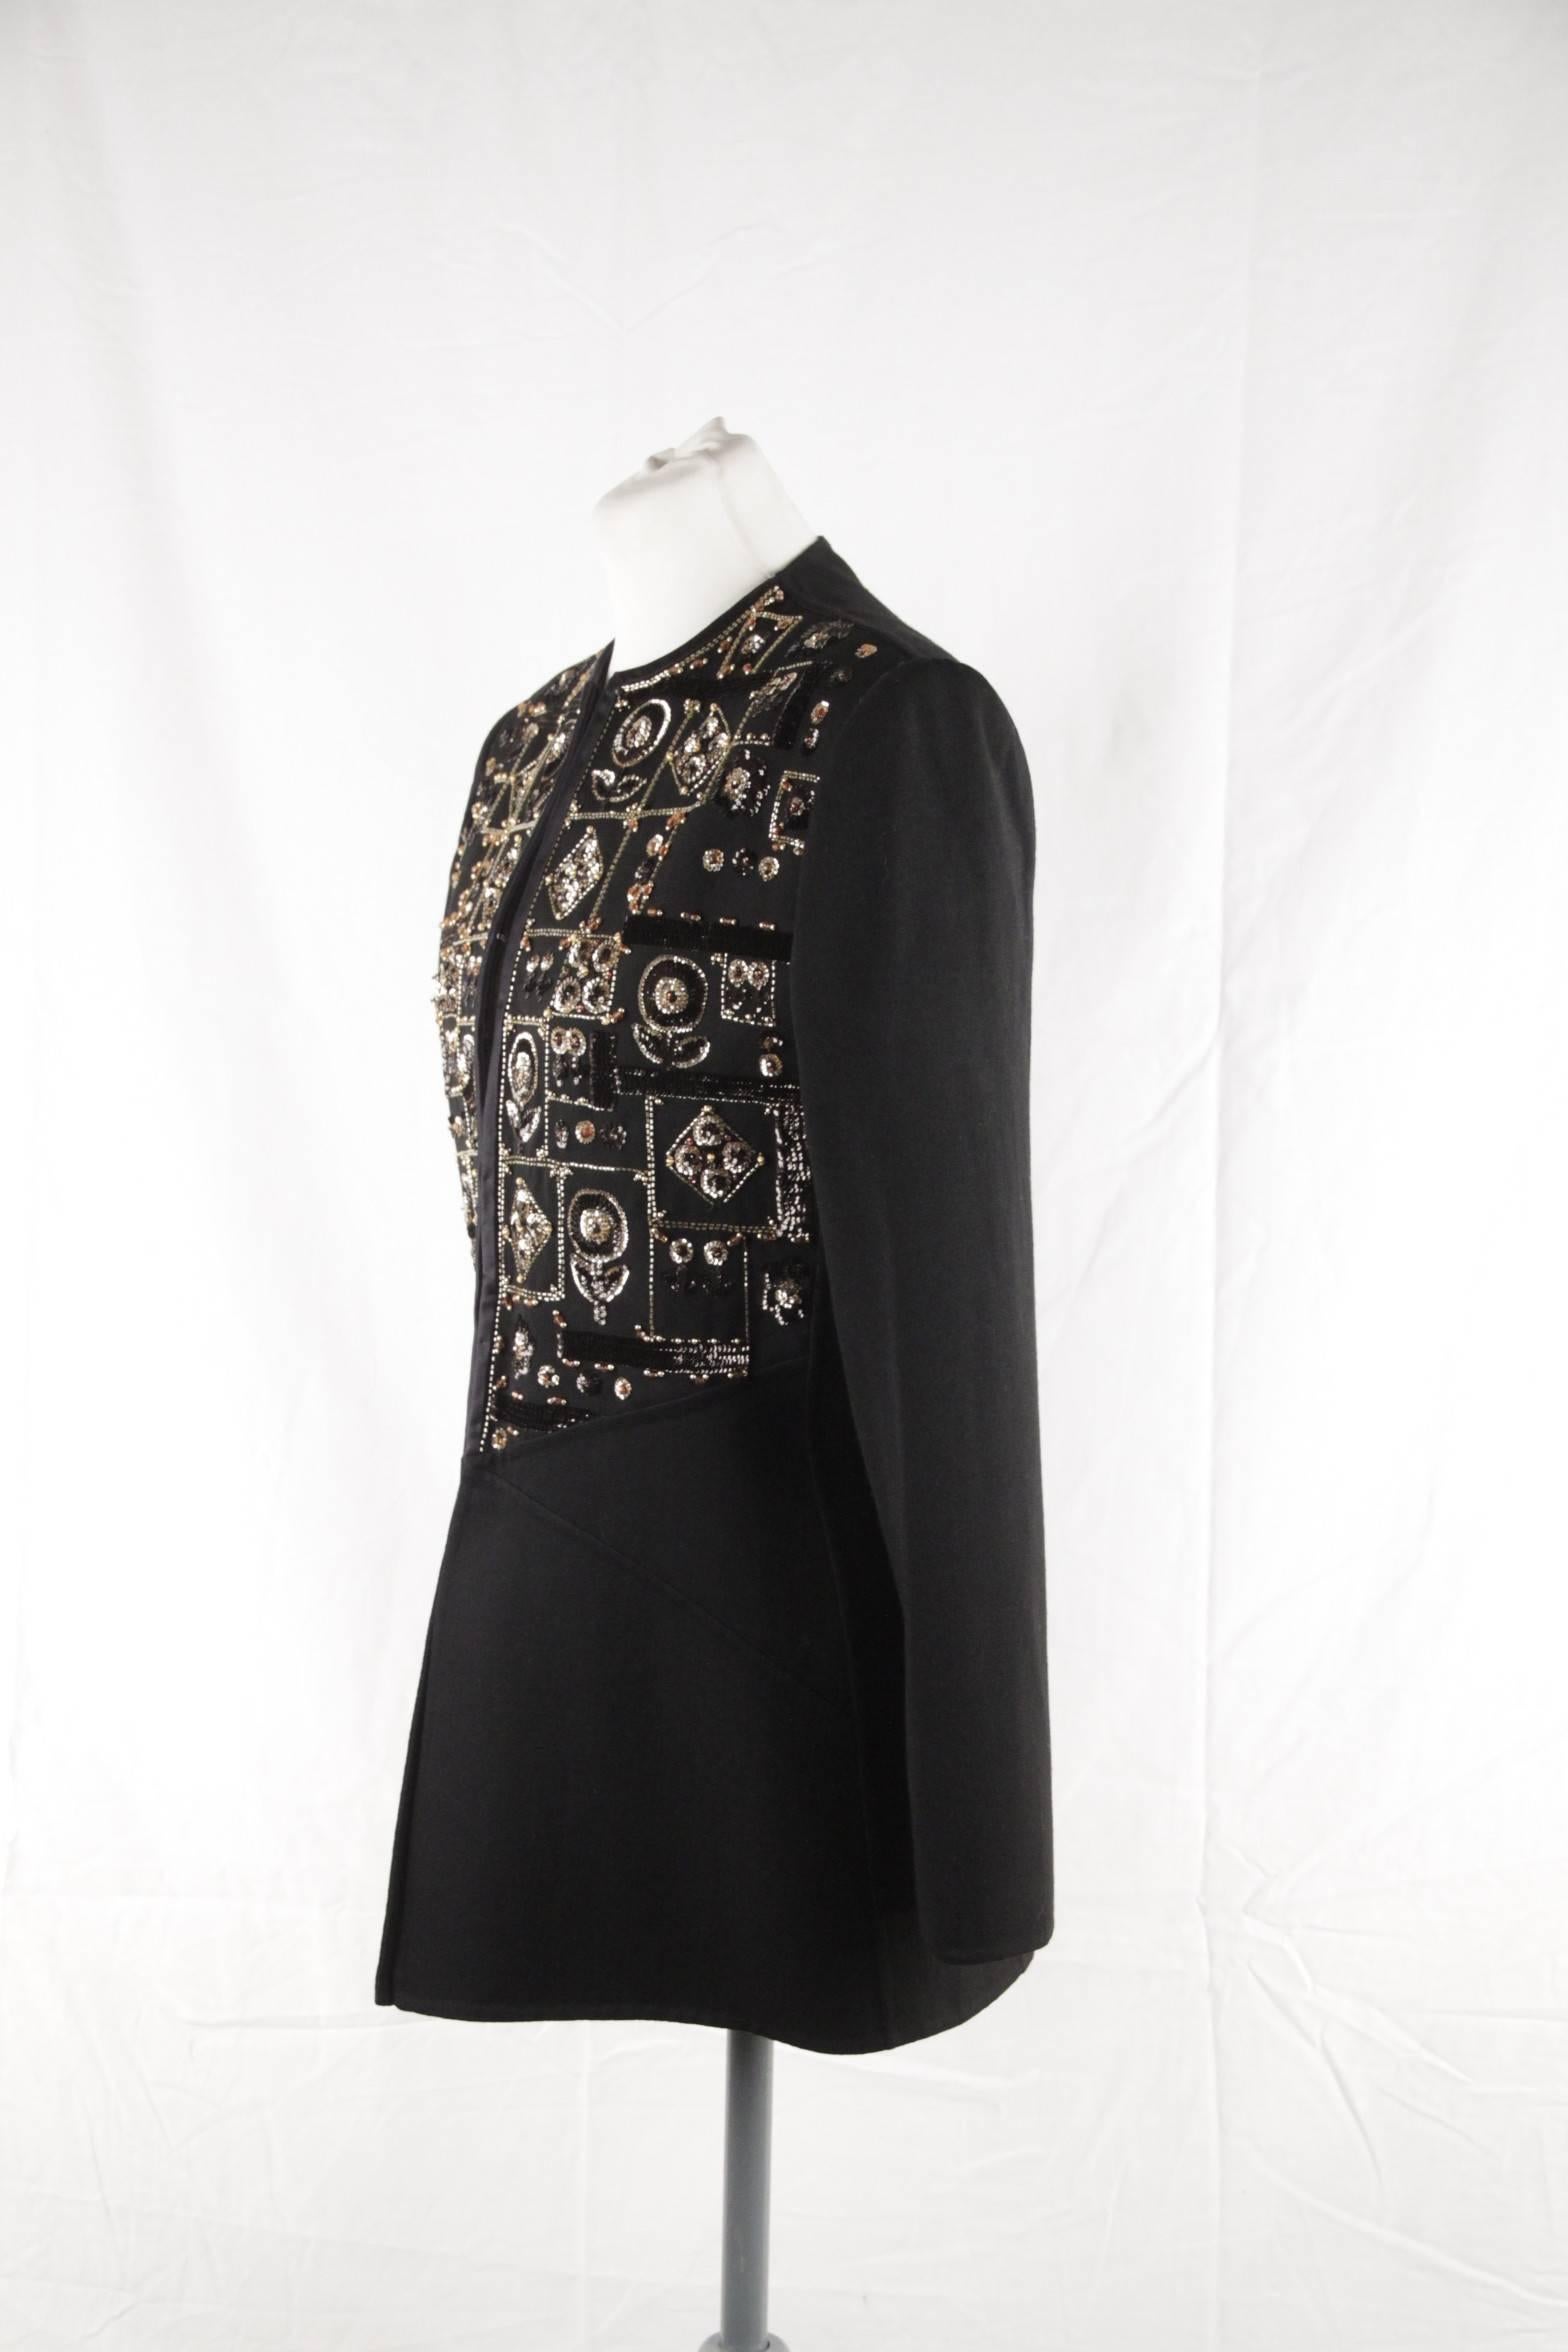 ANDRE LAUG Vintage Black Embellished EVENING JACKET Beads & Sequins 2